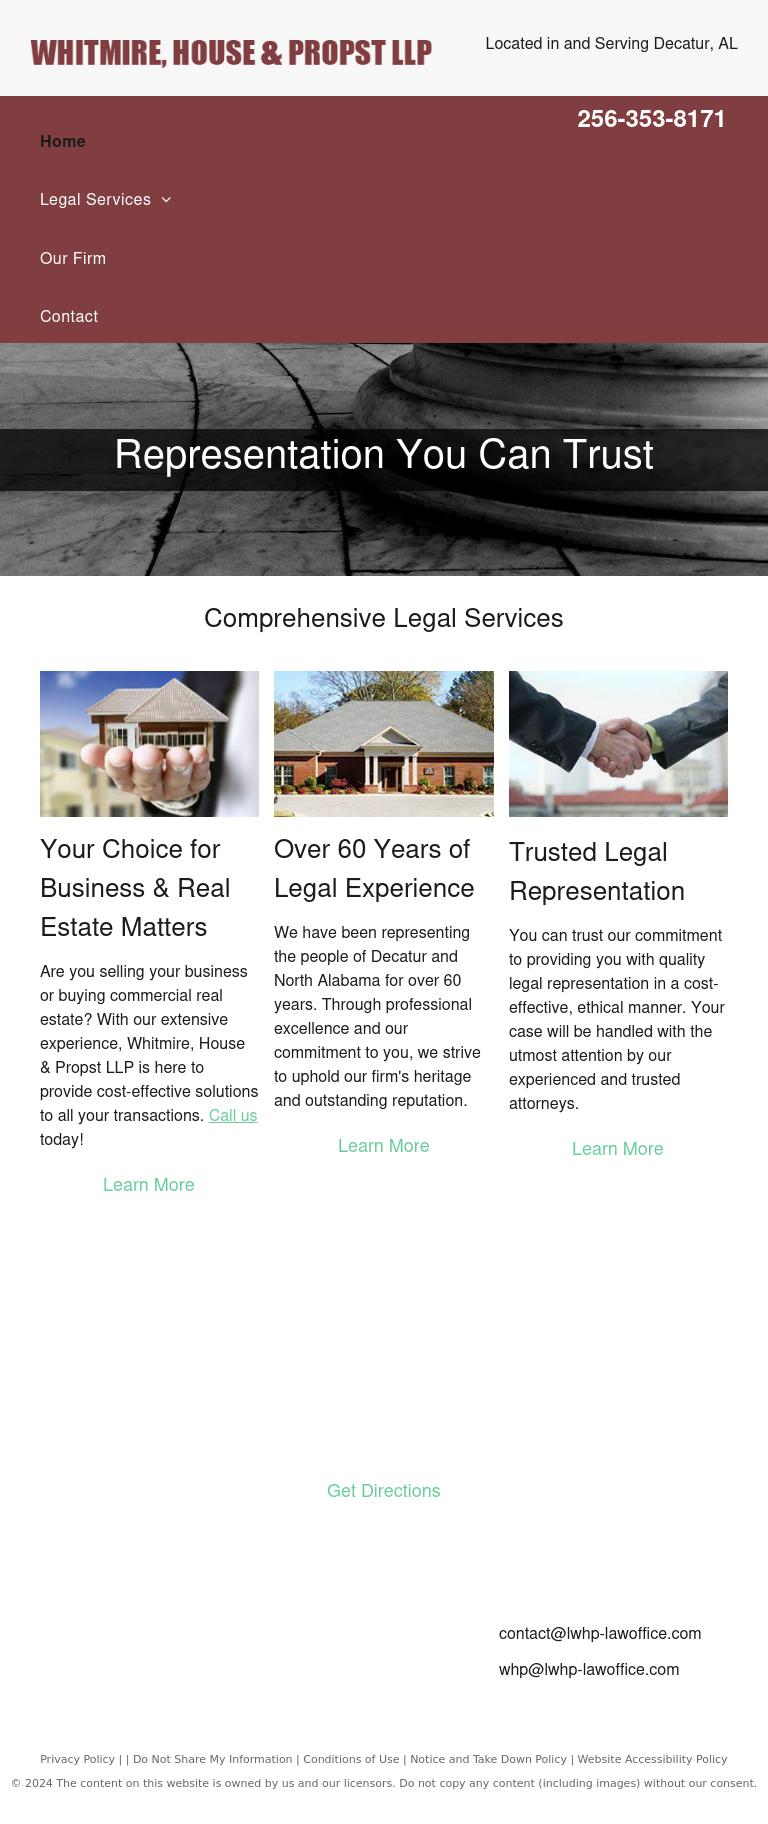 Lentz Whitmire House & Propst LLP - Decatur AL Lawyers